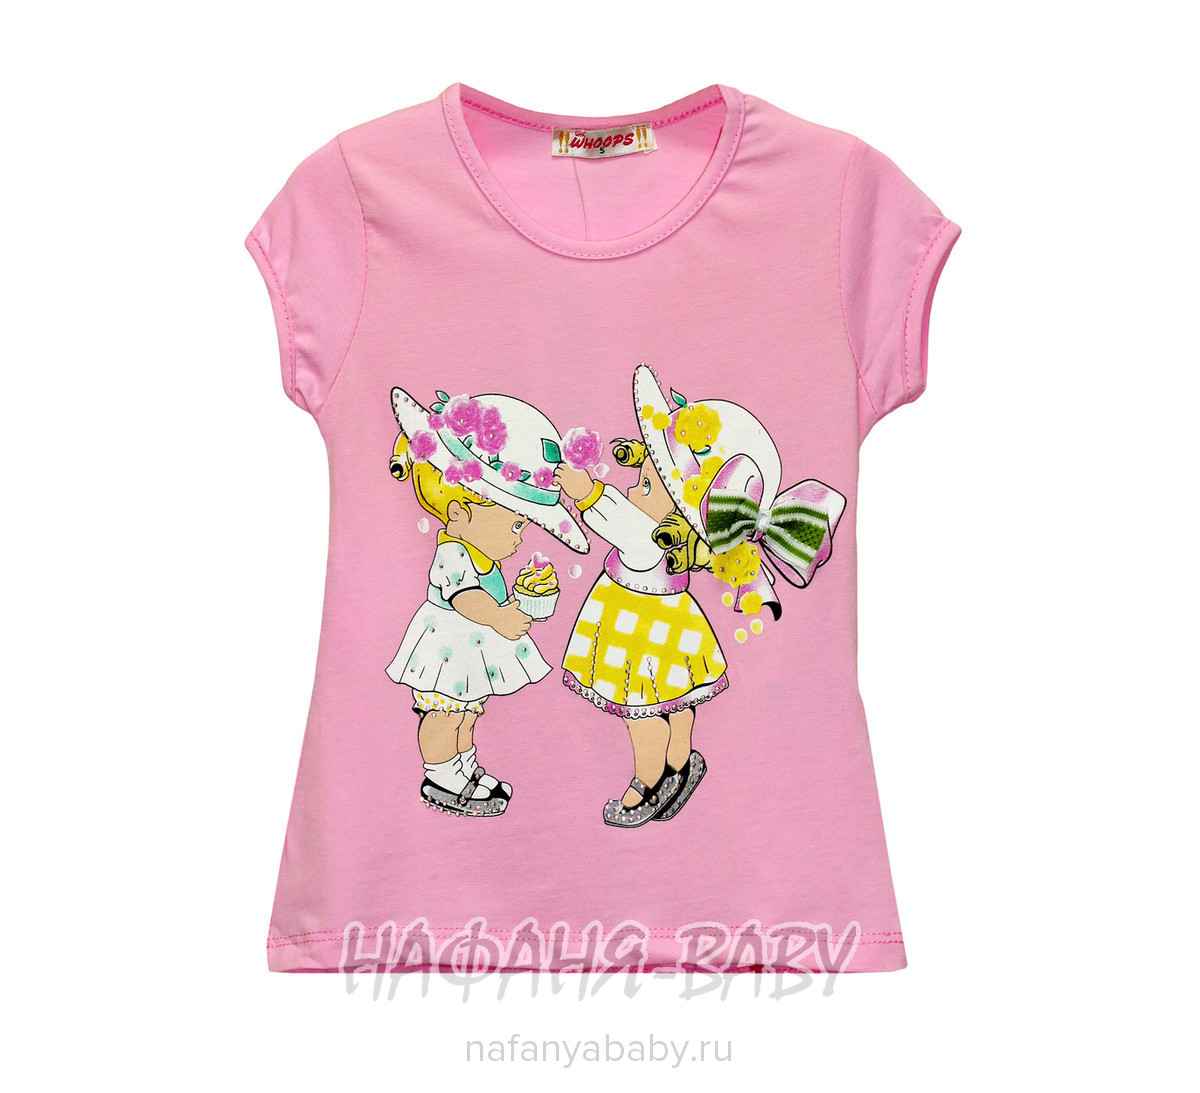 Детская футболка WHOOPS арт: 4111, 1-4 года, 5-9 лет, цвет коралловый, оптом Турция